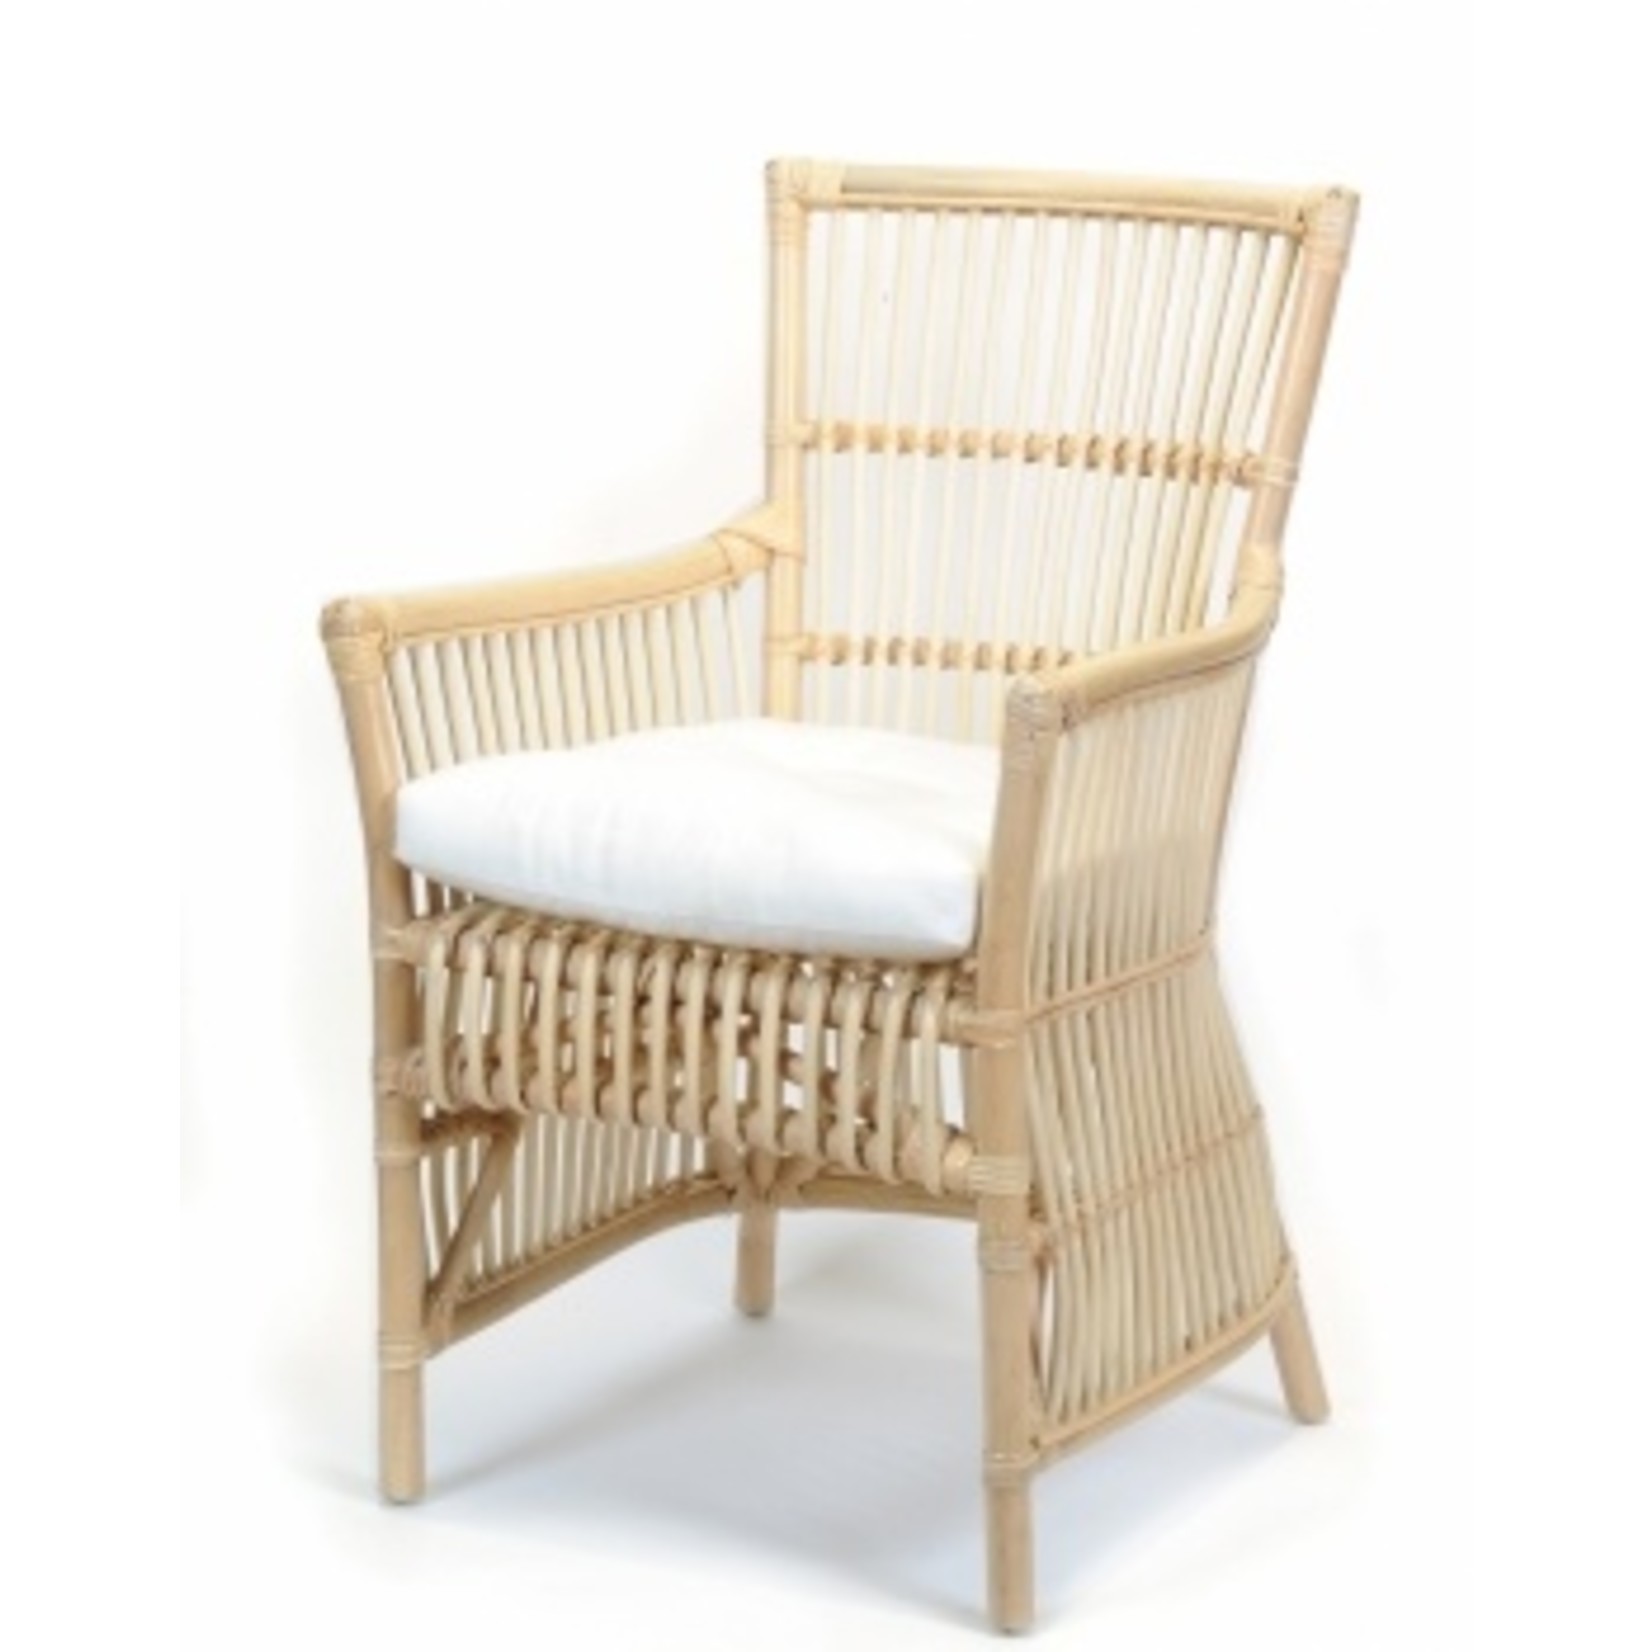 Belinda Chair - Natural